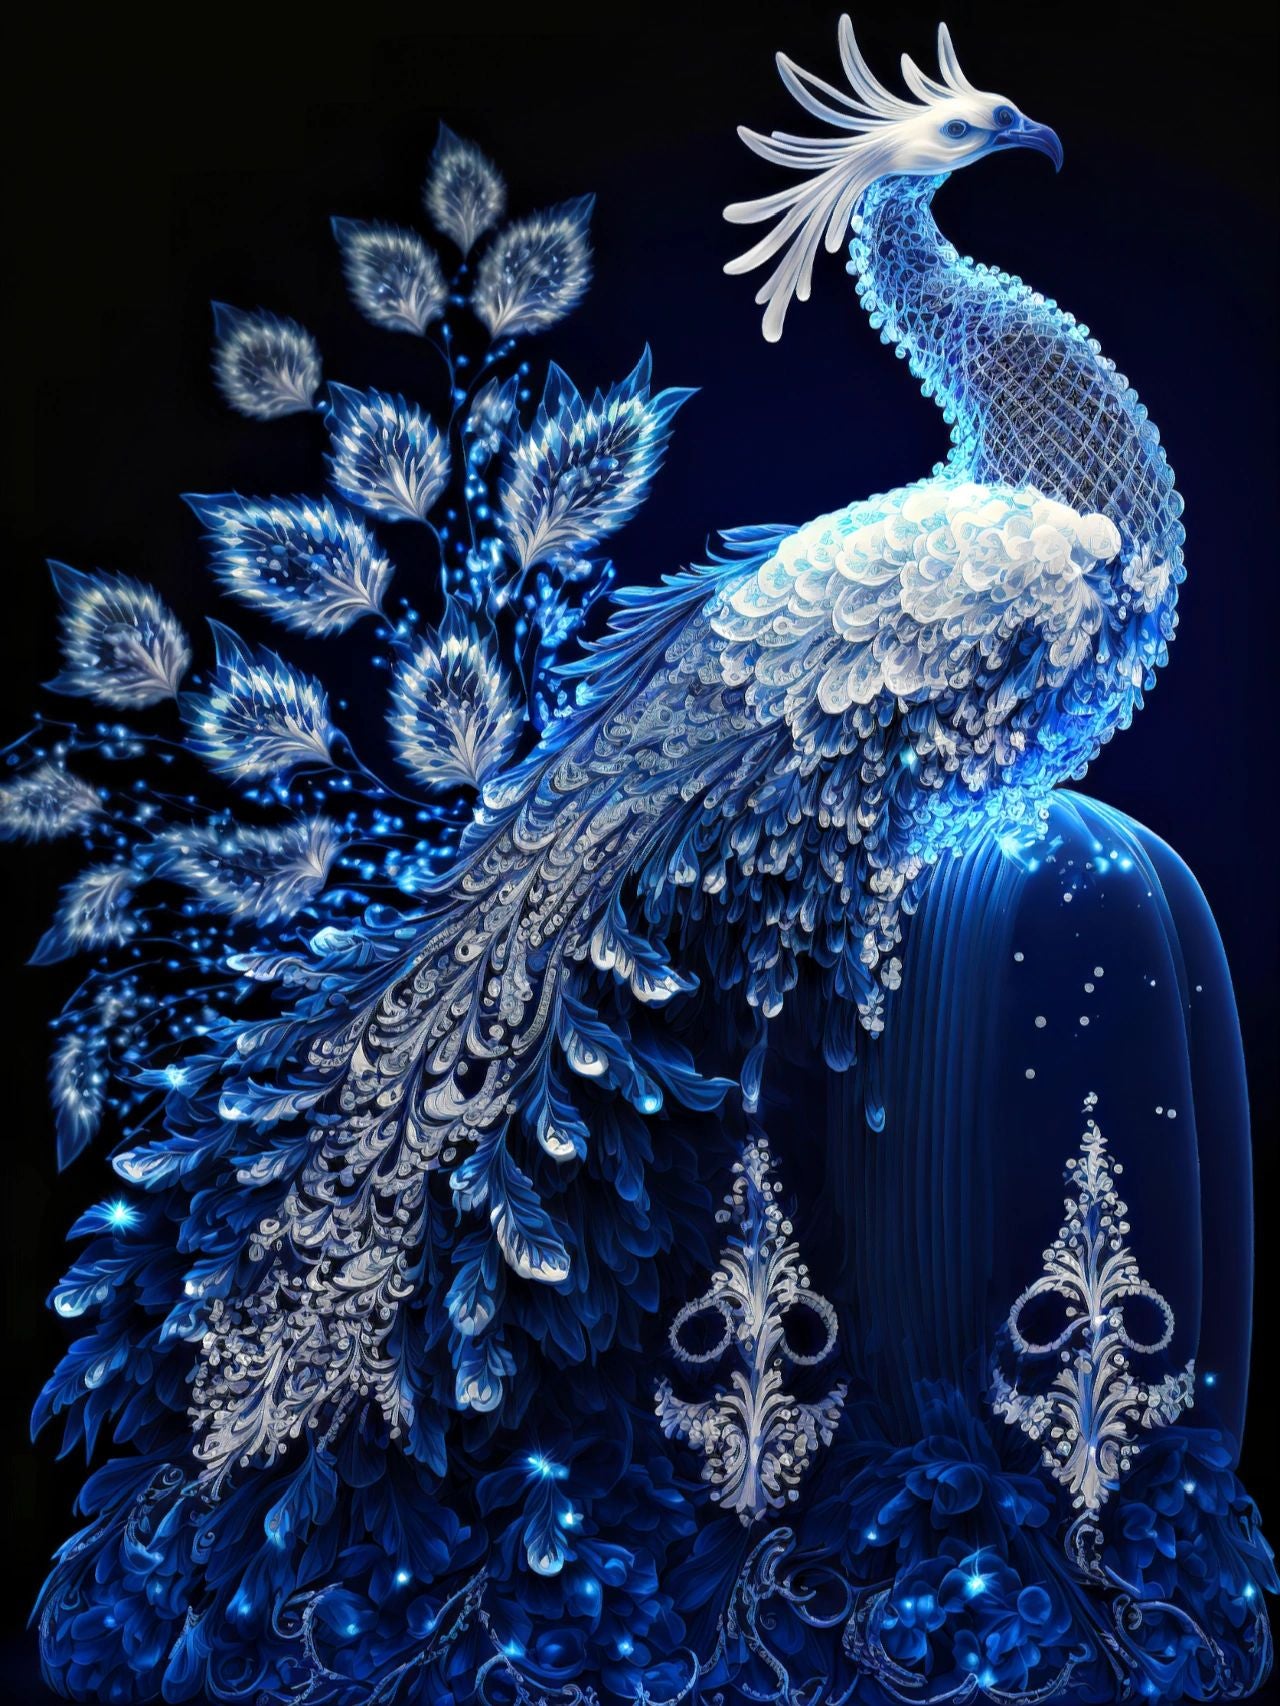 Diamond Painting - Peacock